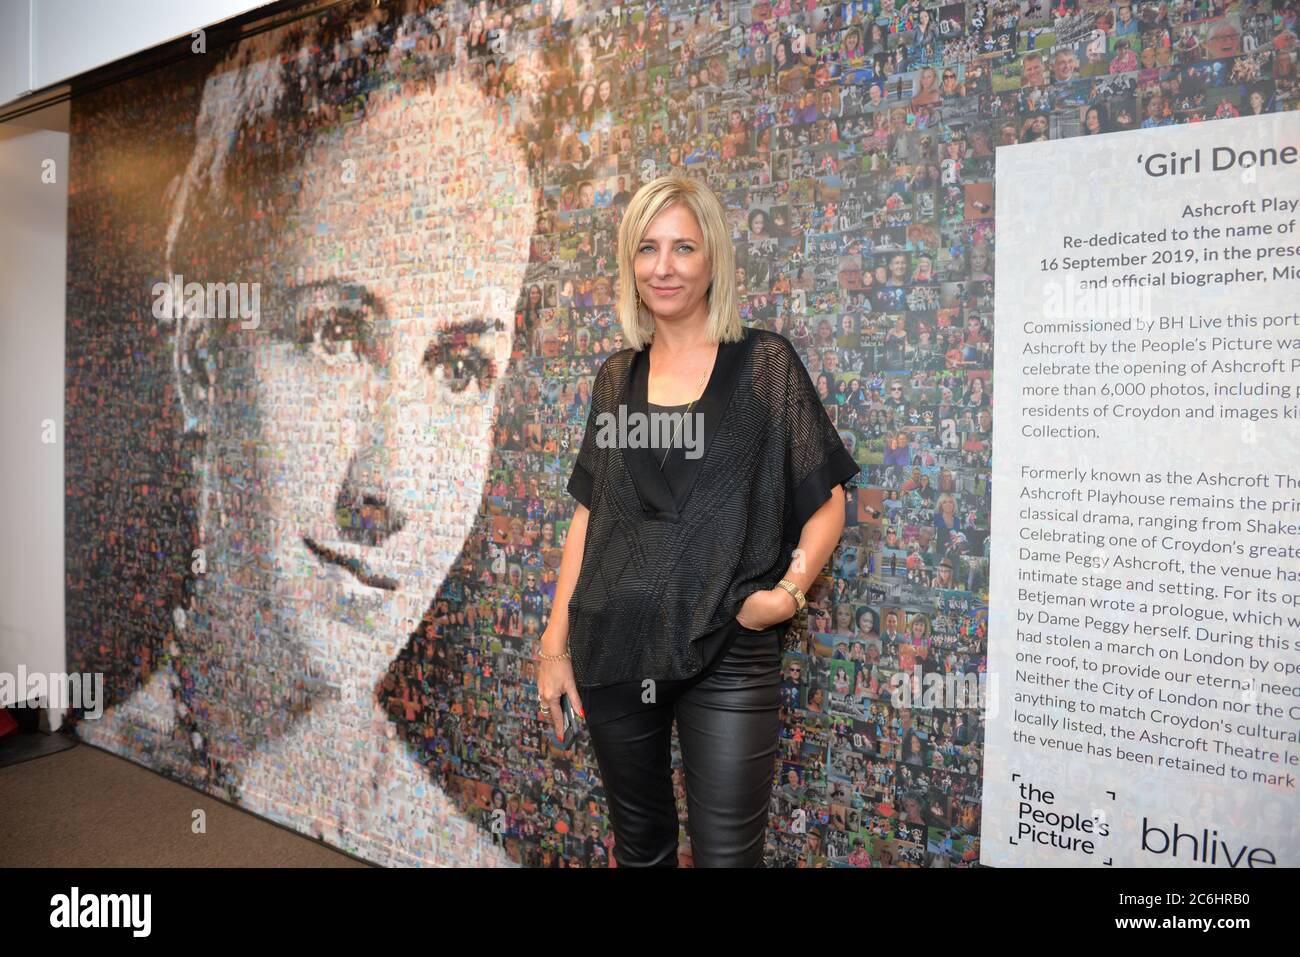 Helen Marshall, Schöpfer des Wandbildes von 6,000 Fotos von Bewohnern von croydon bei der Wiedereröffnung des Ashcroft Playhouse, Fairfield Halls, Croydon ON Stockfoto